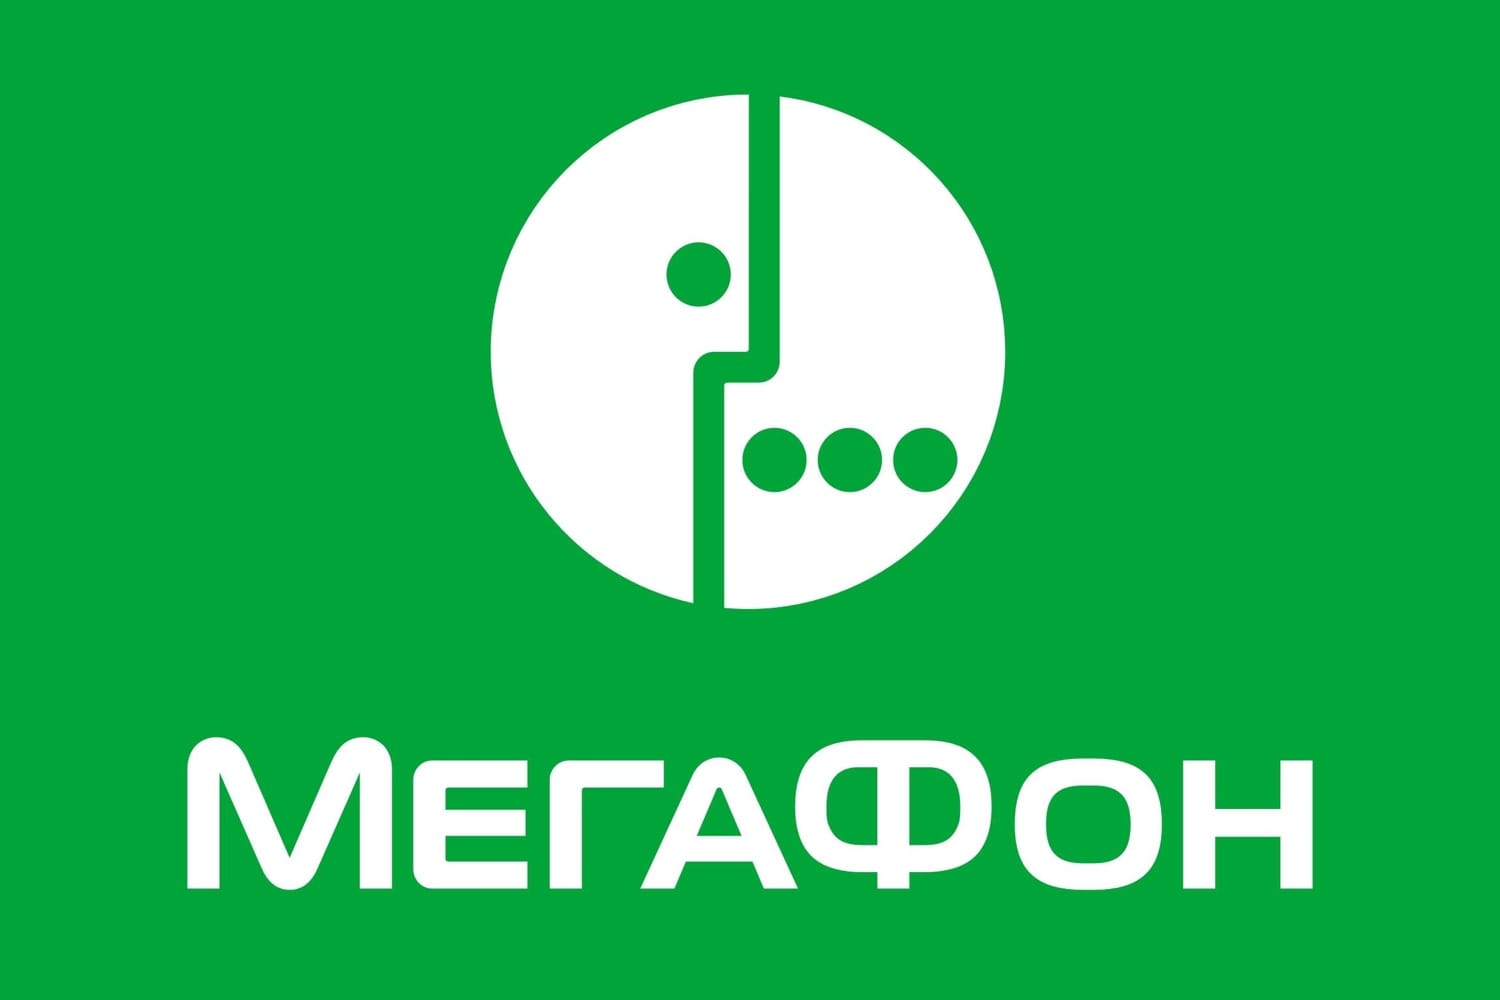 «МегаФон» — российская телекоммуникационная компания